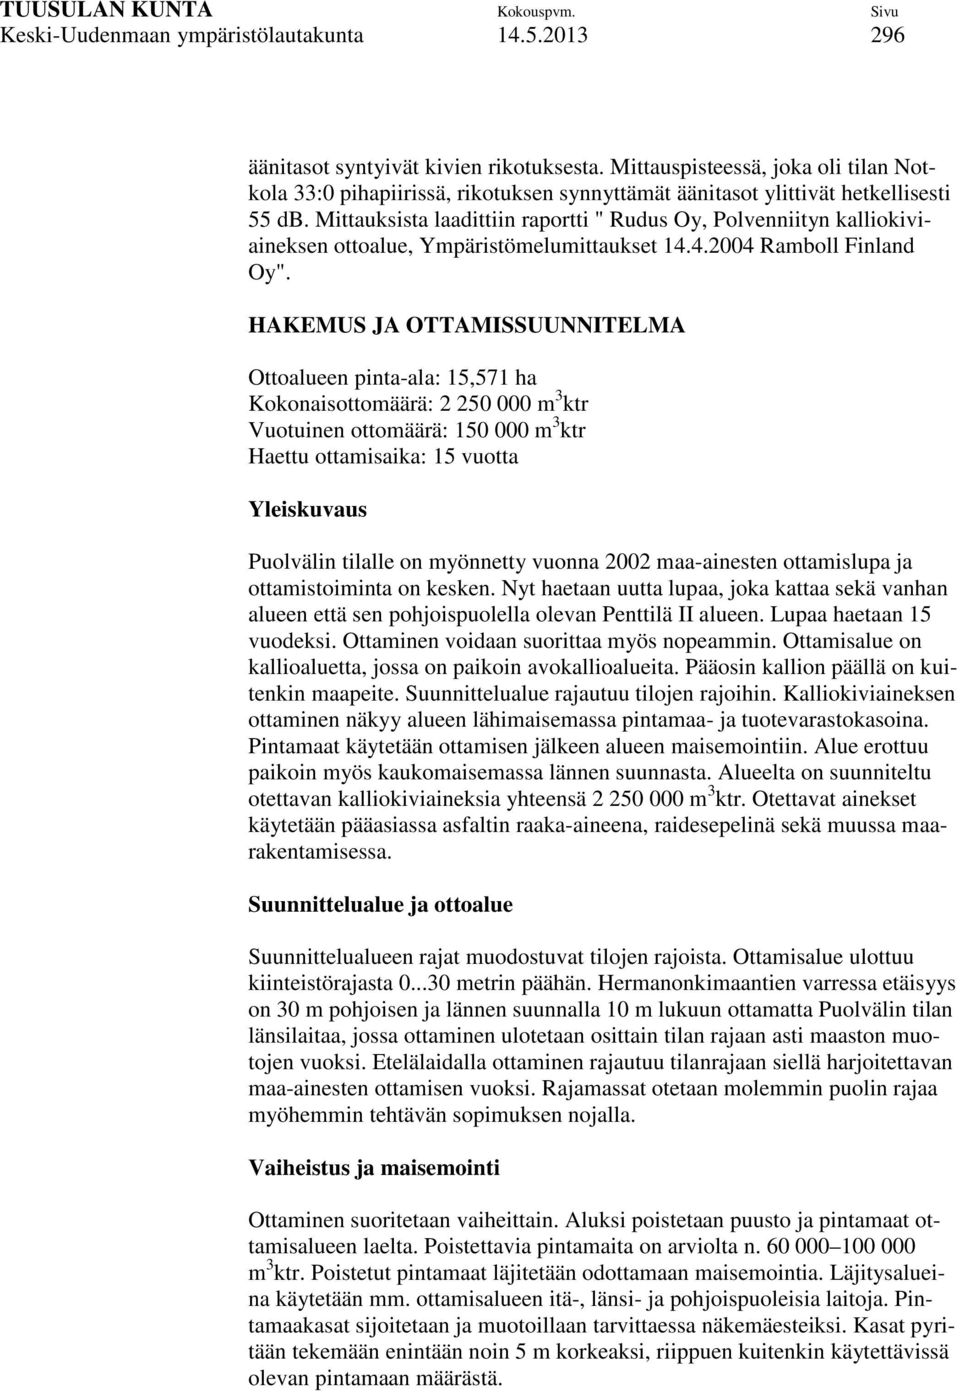 Mittauksista laadittiin raportti " Rudus Oy, Polvenniityn kalliokiviaineksen ottoalue, Ympäristömelumittaukset 14.4.2004 Ramboll Finland Oy".